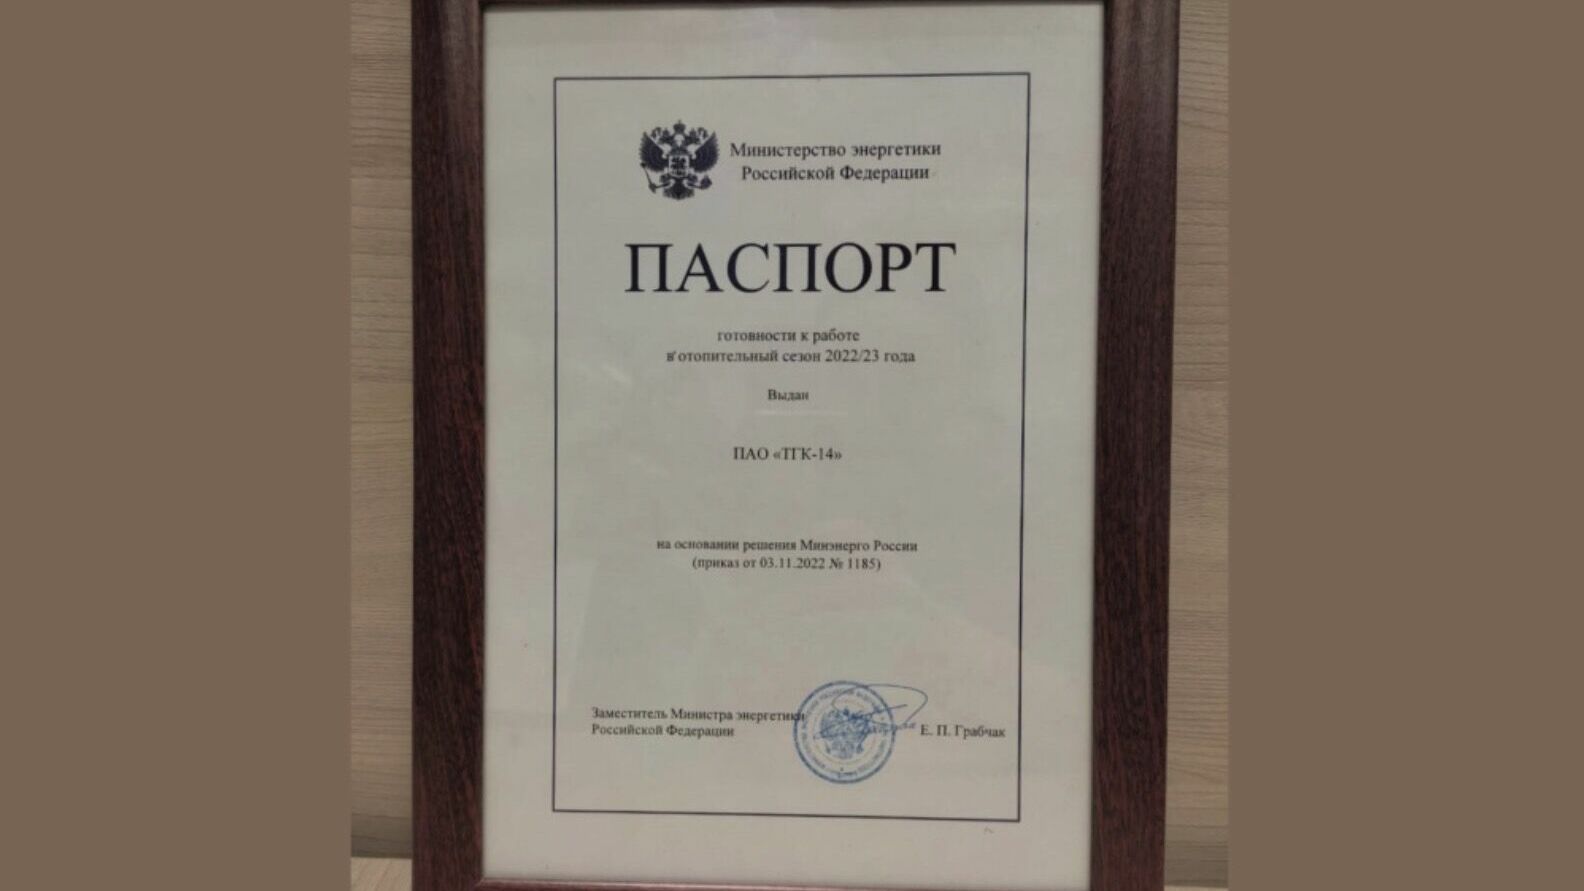 ТГК-14 получила паспорт готовности к работе в новый отопительный сезон